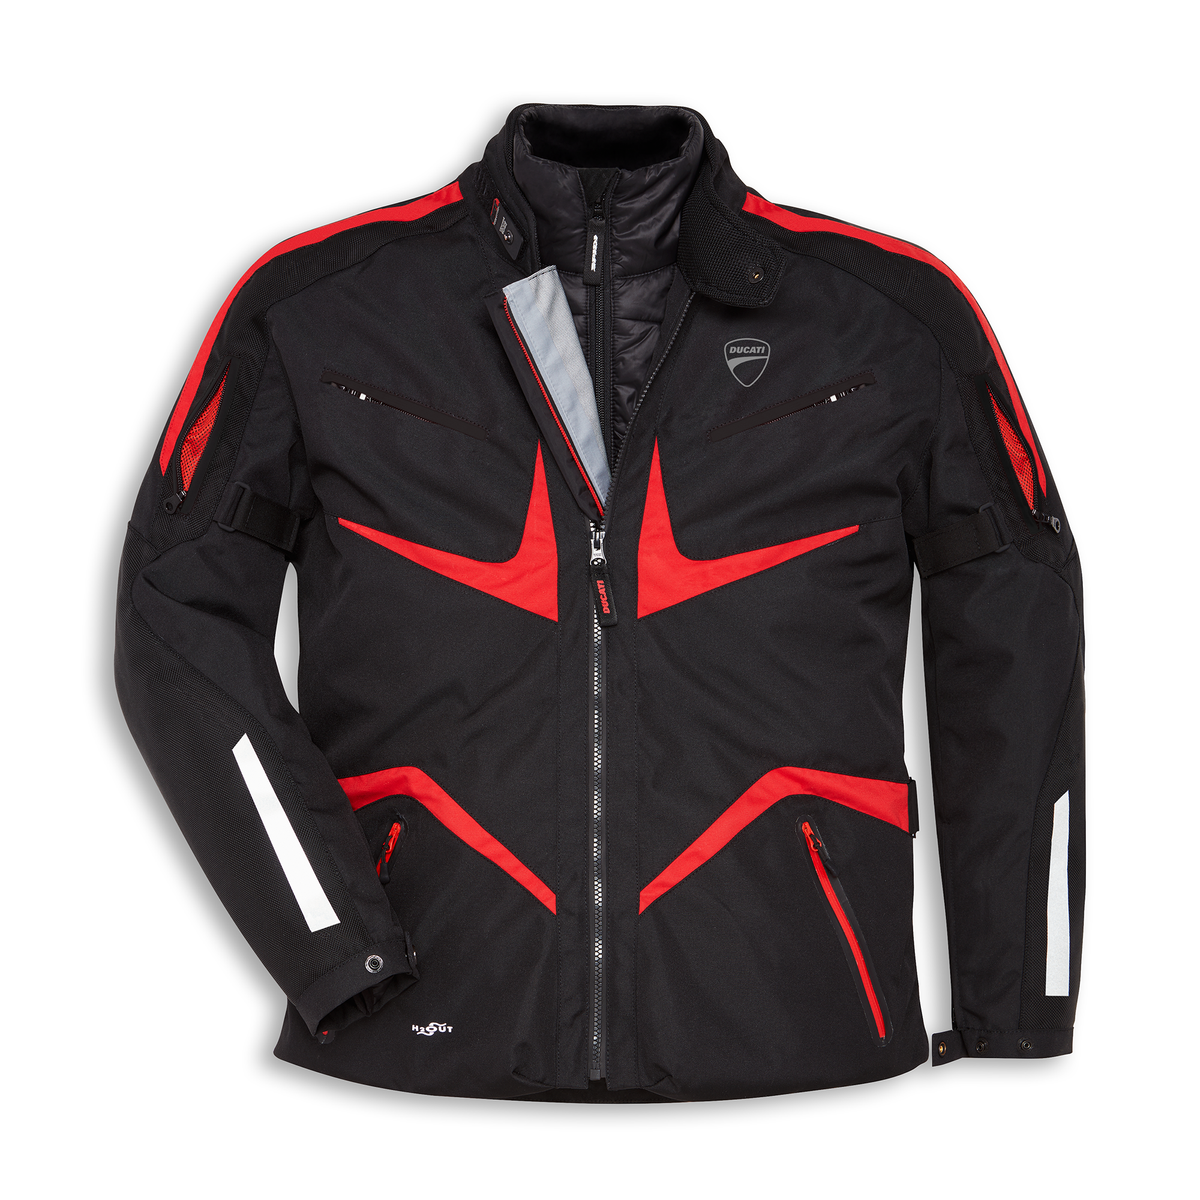 Ducati Tour V2 Men's Fabric Jacket